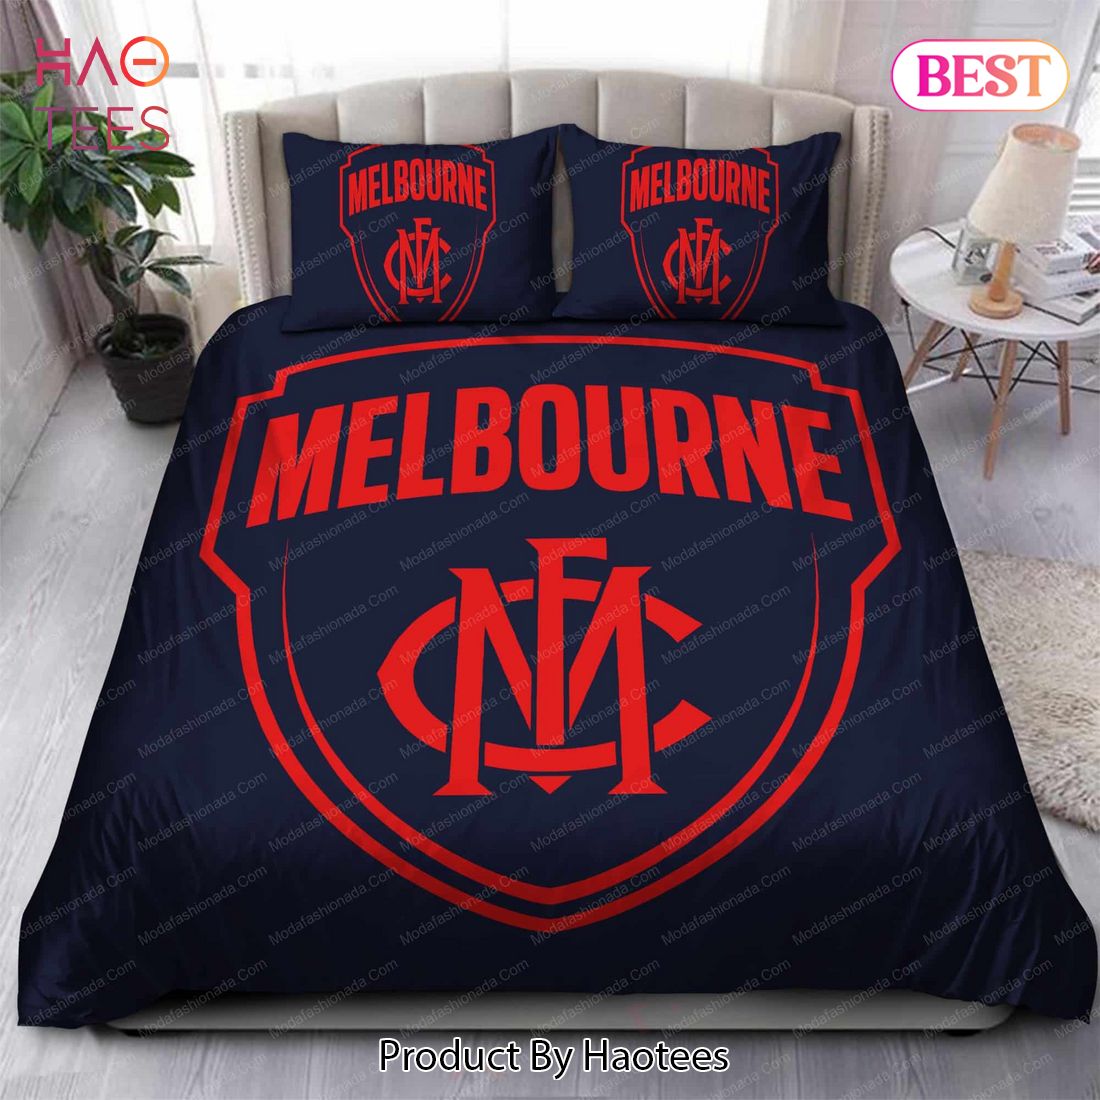 Buy Melbourne Football Club Logo Bedding Sets Bed Sets, Bedroom Sets, Comforter Sets, Duvet Cover, Bedspread